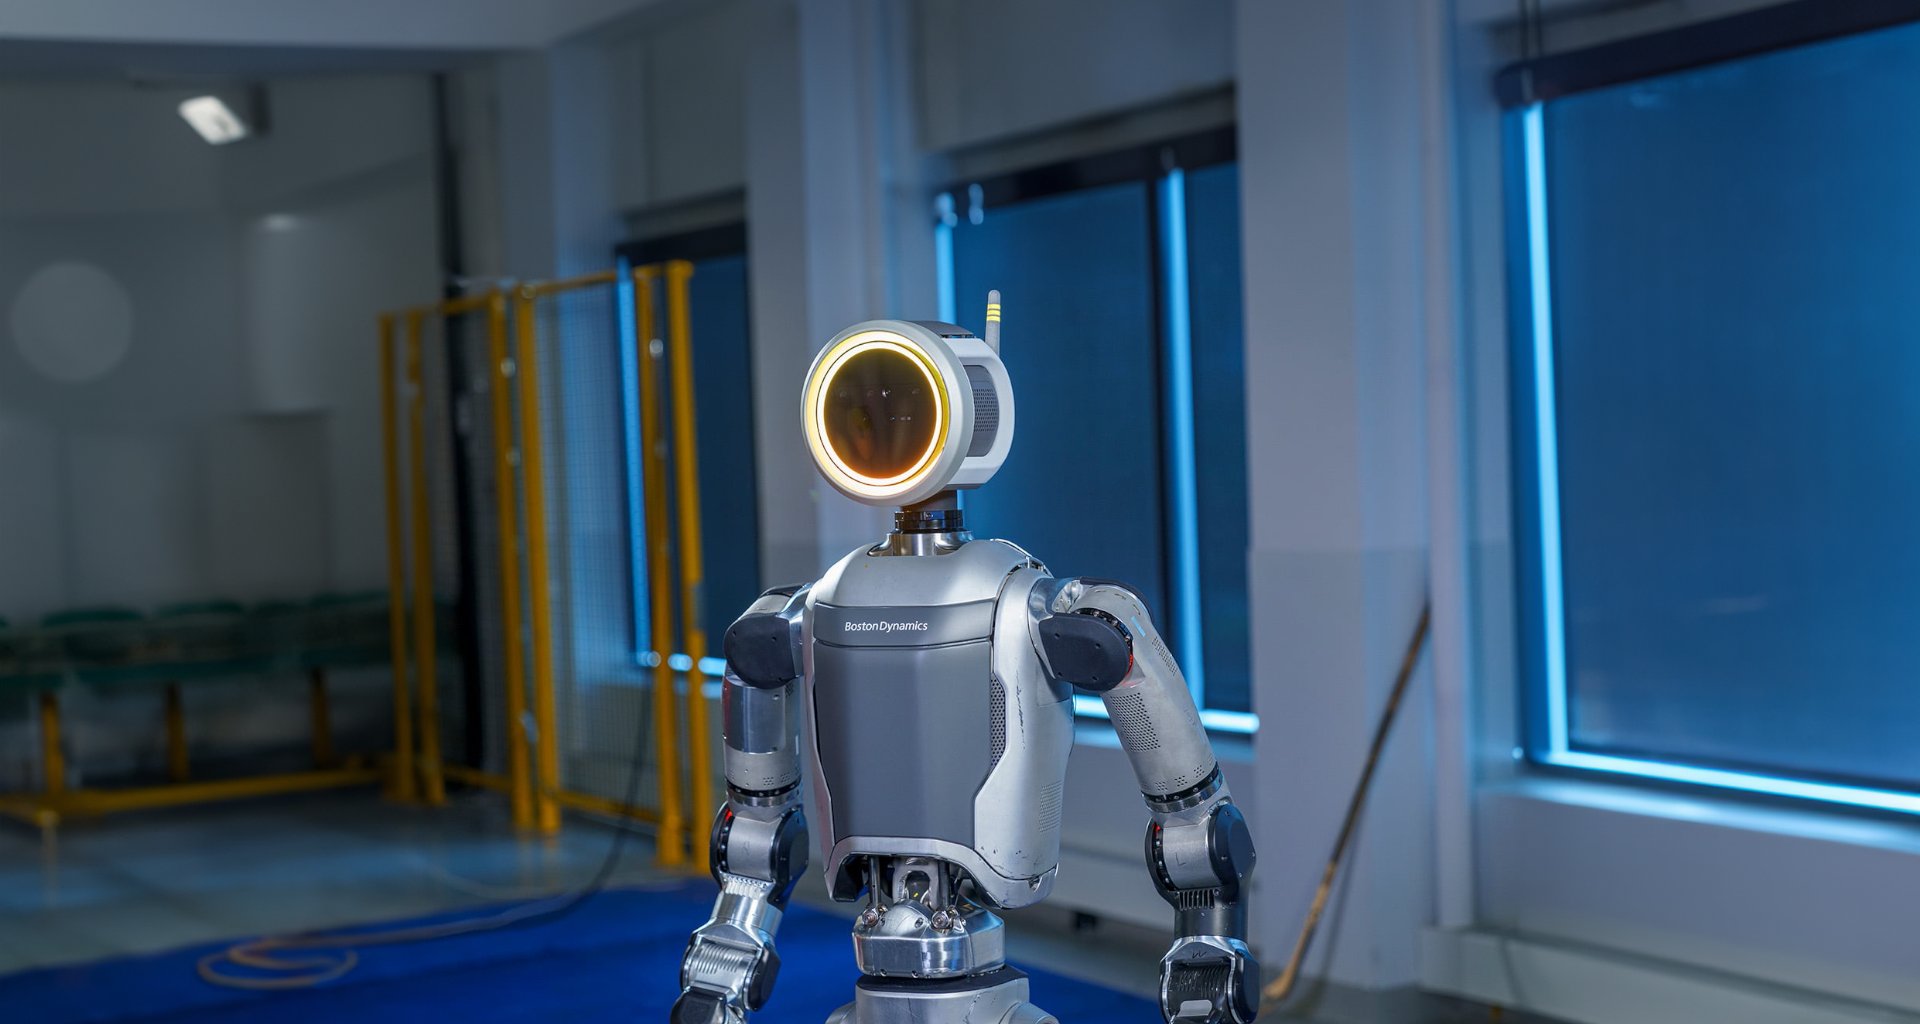 Boston dynamics anuncia atlas elétrico, nova versão do robô humanoide. O revolucionário robô apresenta design aprimorado, maior força e amplitude de movimentos superiores aos humanos, aposentando versão hidráulica